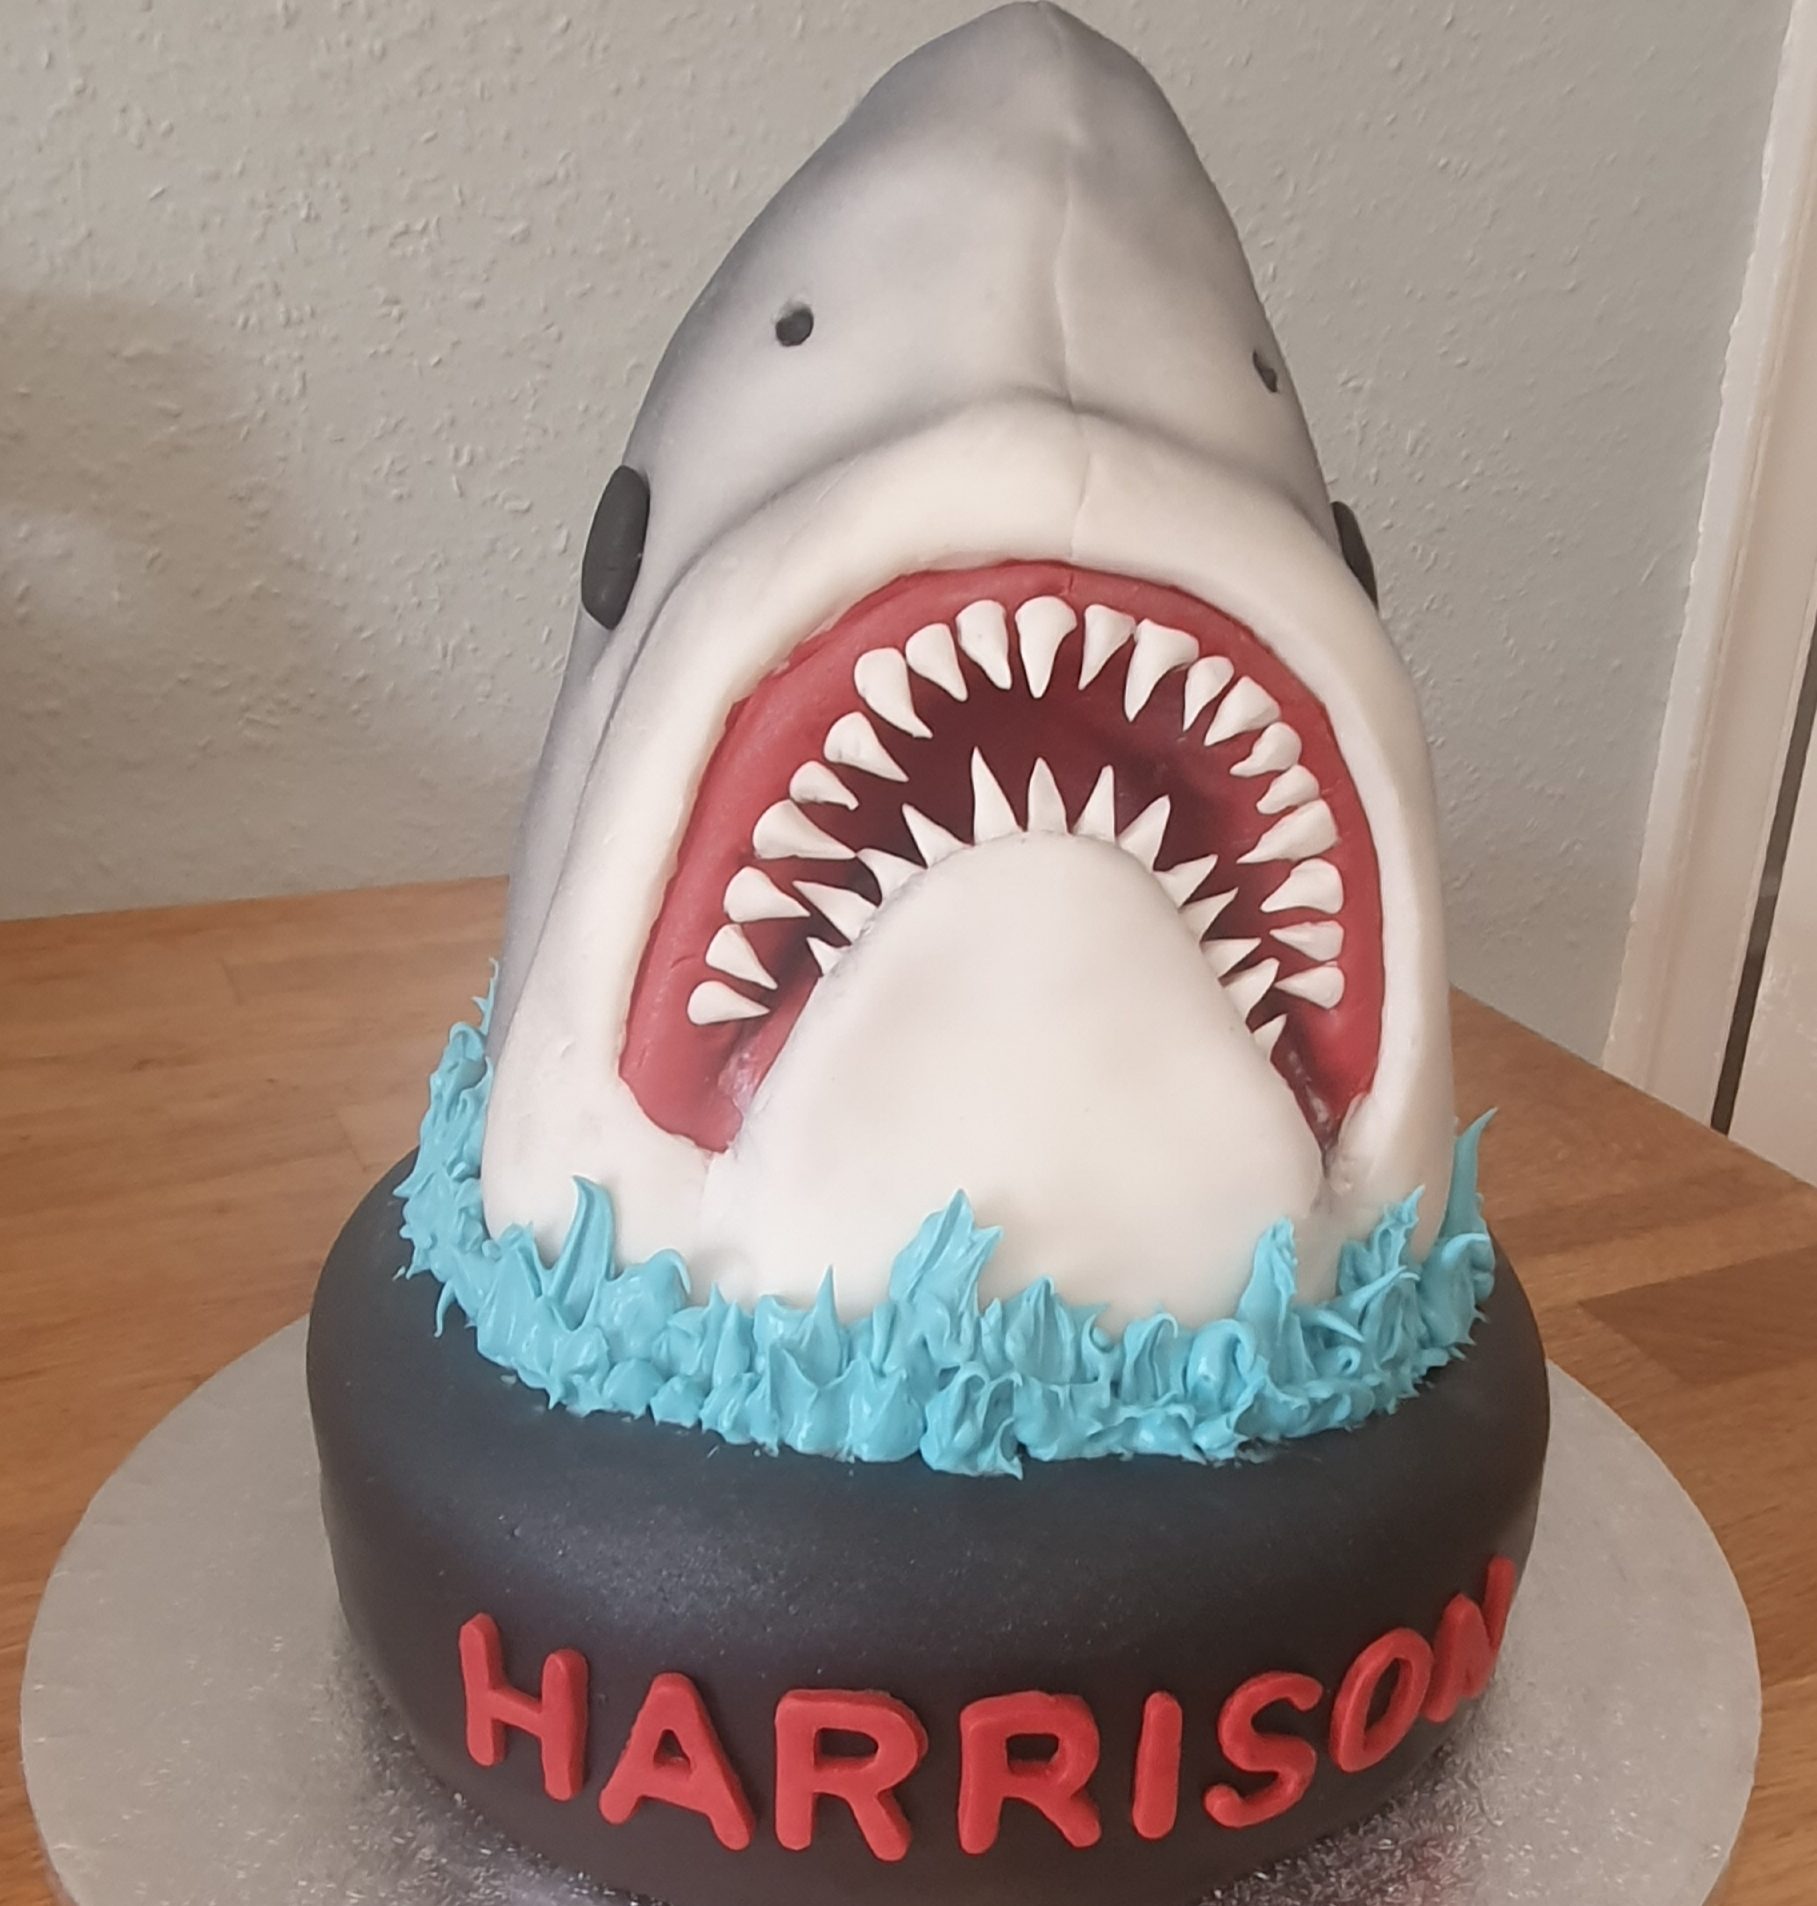 Harrison Happy Birthday Cakes Pics Gallery